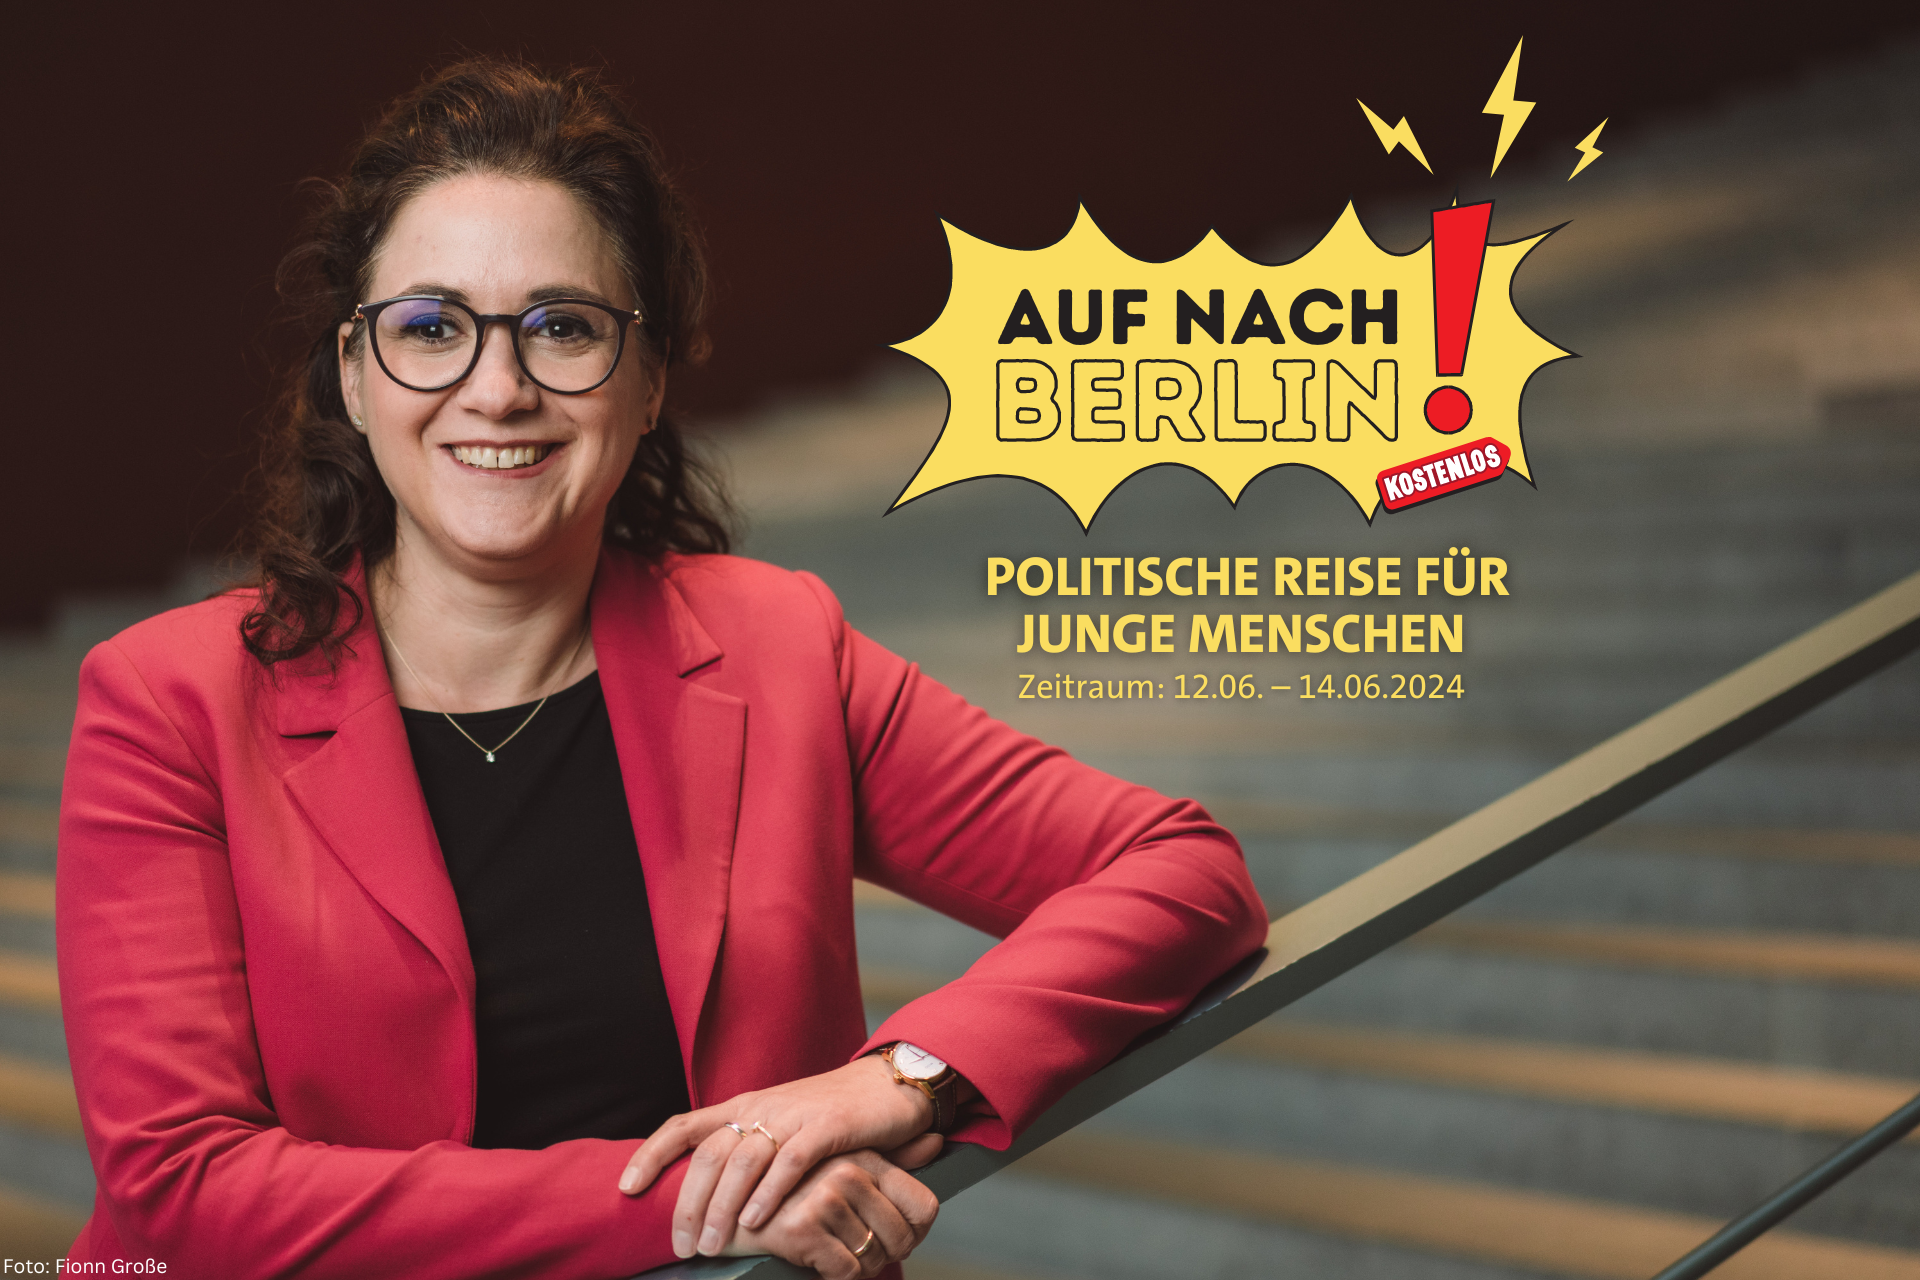 Politische Reise für junge Menschen nach Berlin